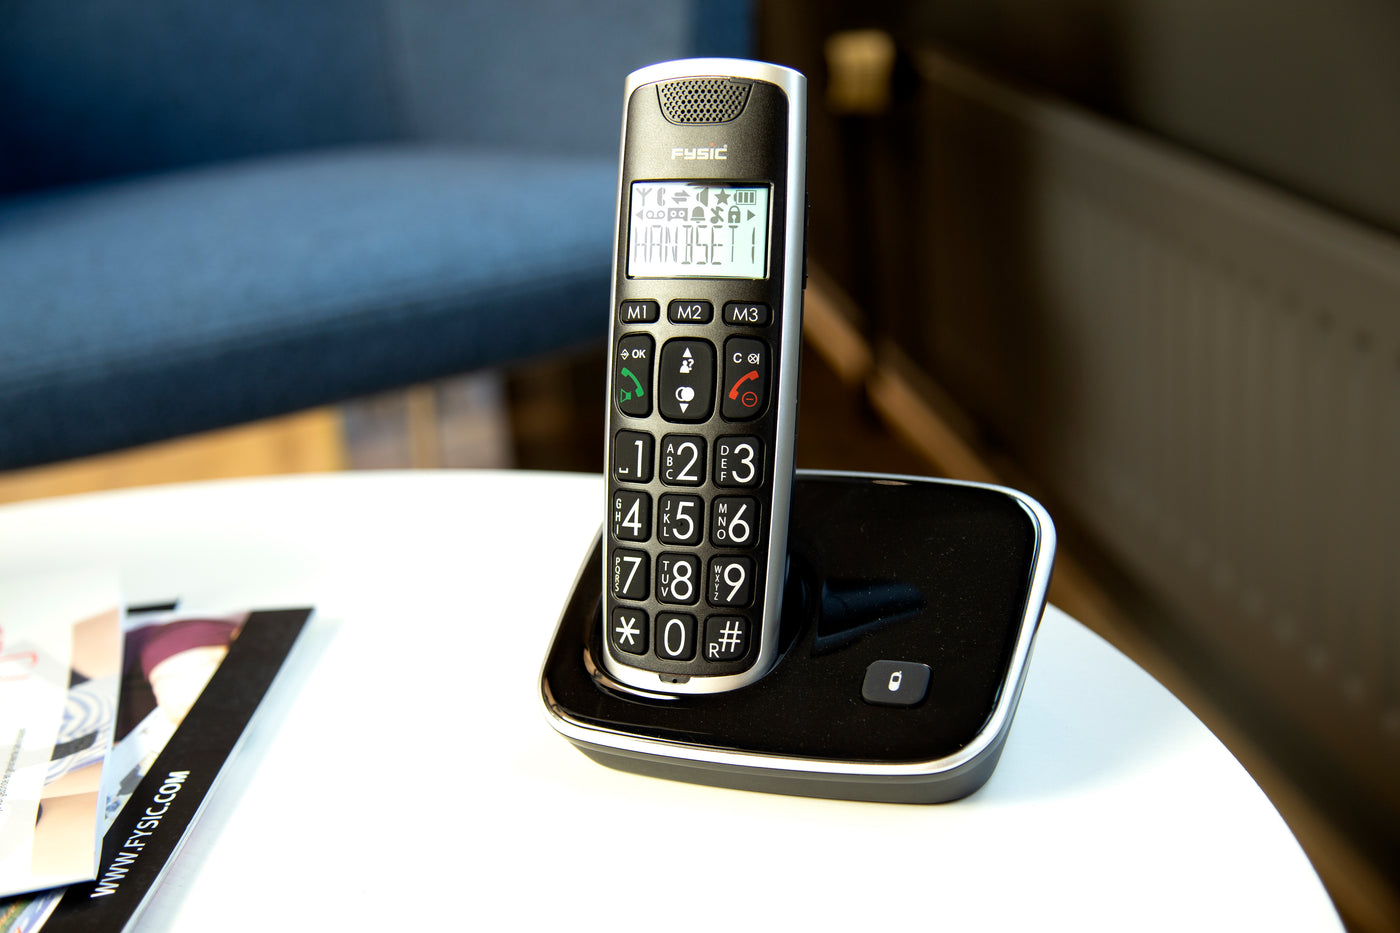 Fysic FX-6000 - DECT-Telefon für Senioren mit großen Tasten und 1 Mobilteil, Schwarz